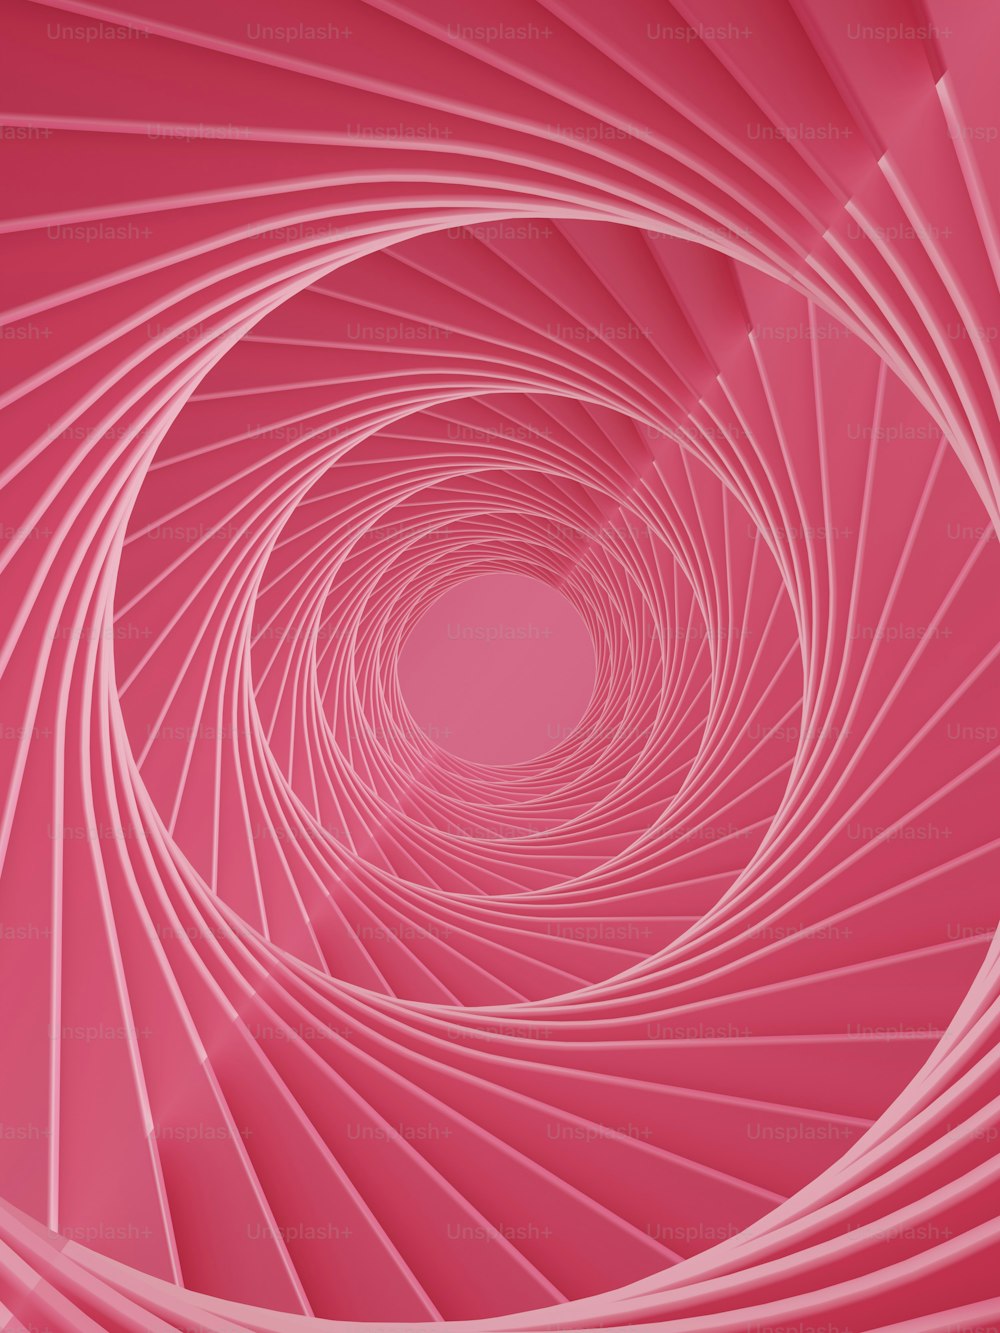 ein rosa Hintergrund mit einem spiralförmigen Design in der Mitte